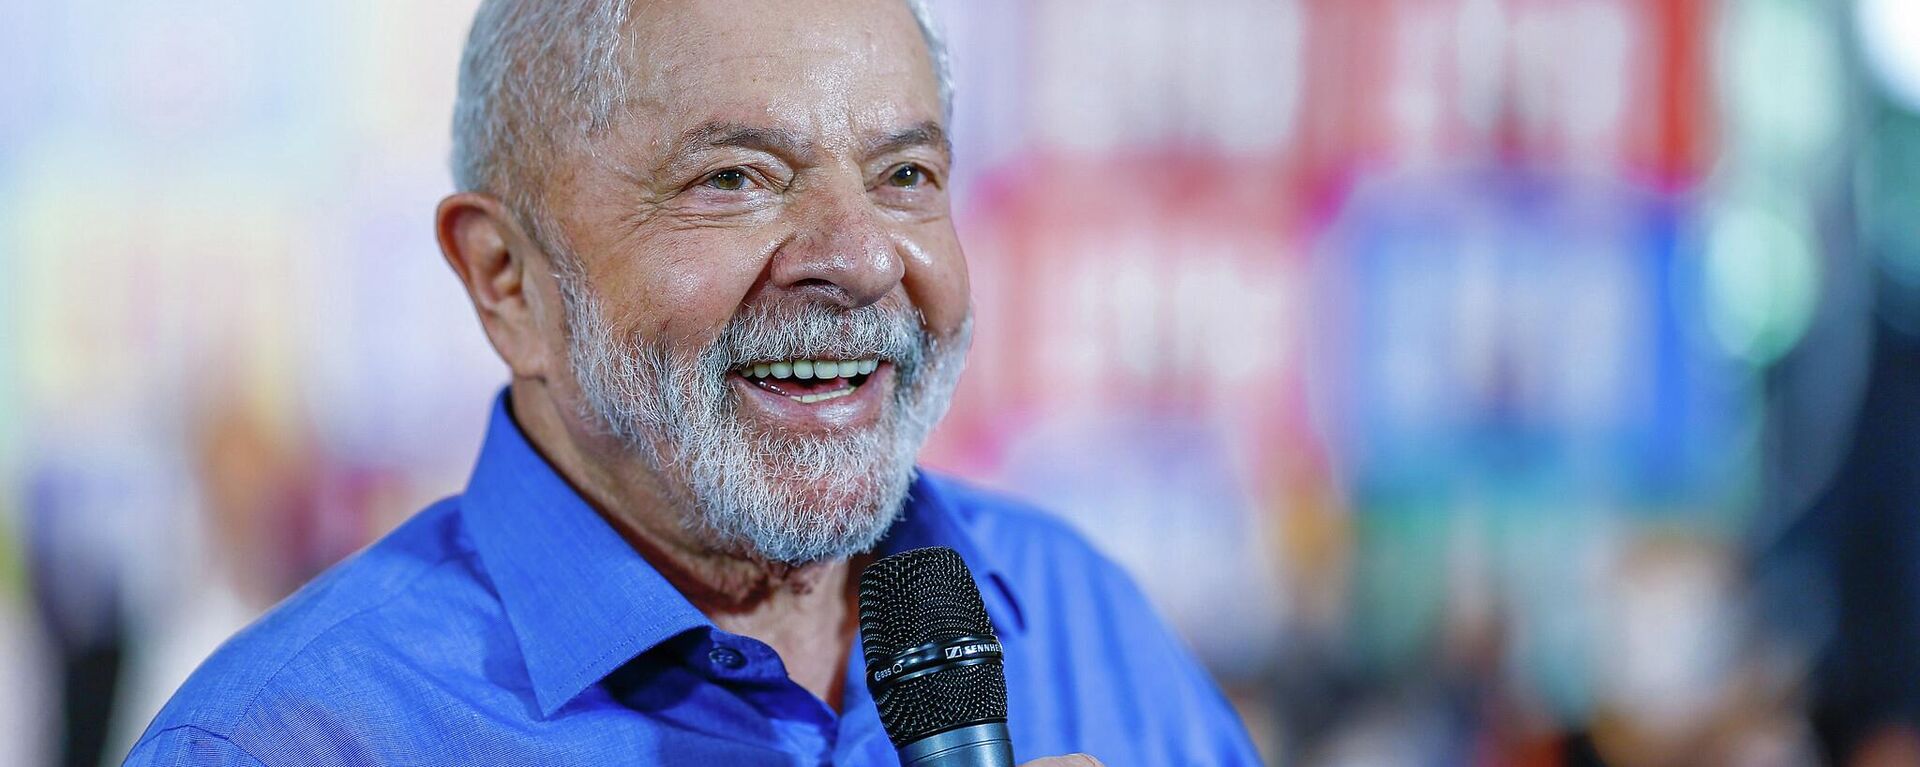 O ex-presidente Lula participa de atividade de campanha. São Paulo, 22 de setembro de 2022. - Sputnik Brasil, 1920, 30.09.2022